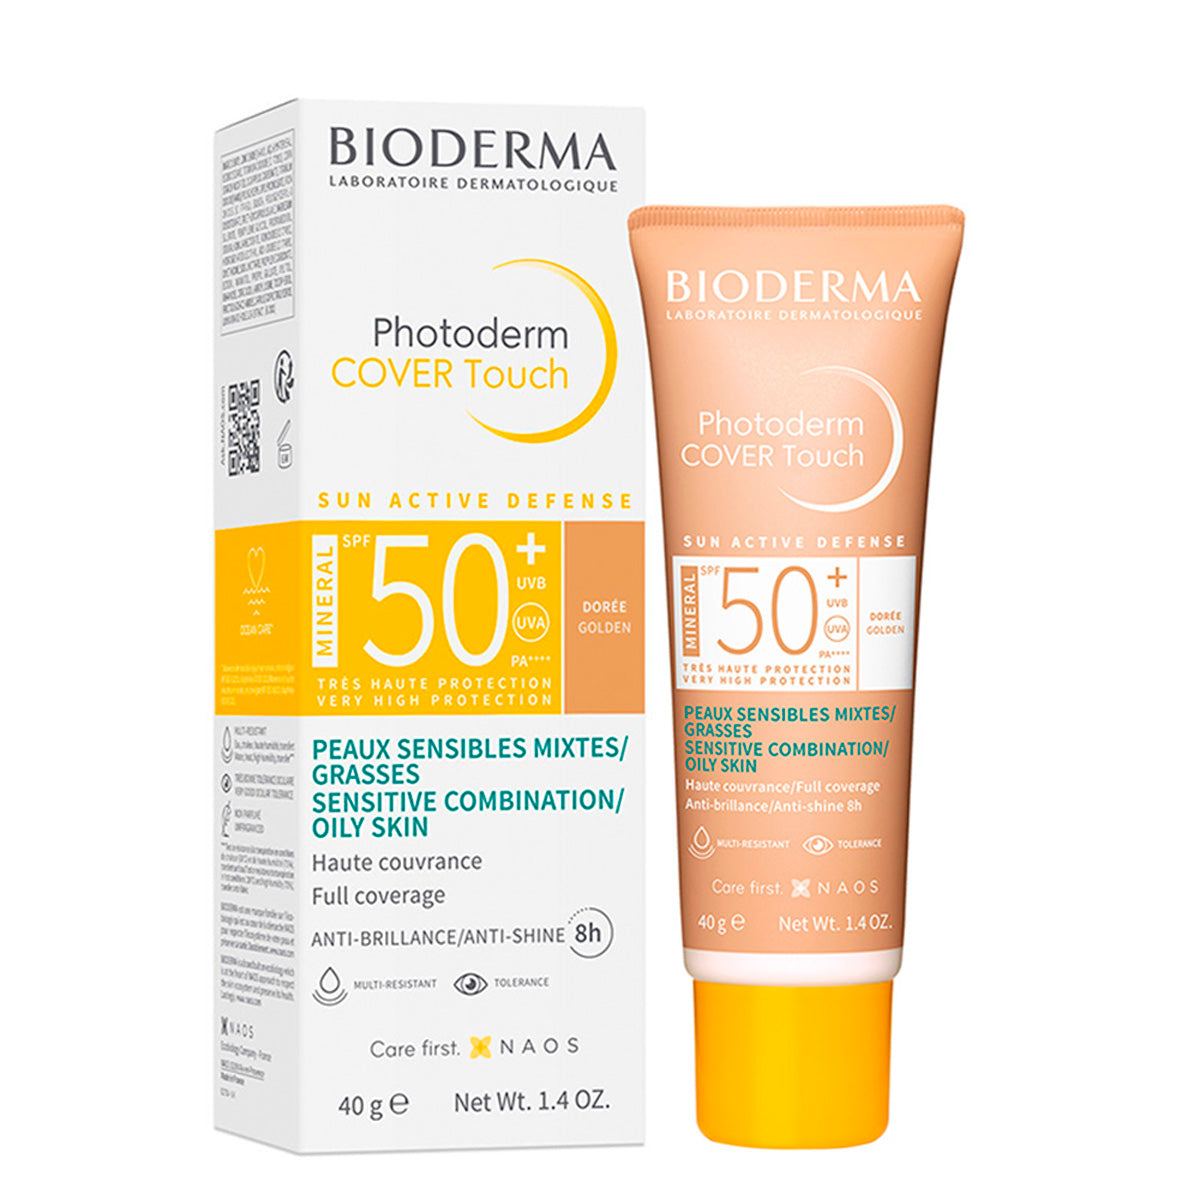 Bioderma Photoderm Cover Touch FPS 50+ Tono Dorado, Protección solar facial con color, 40ml